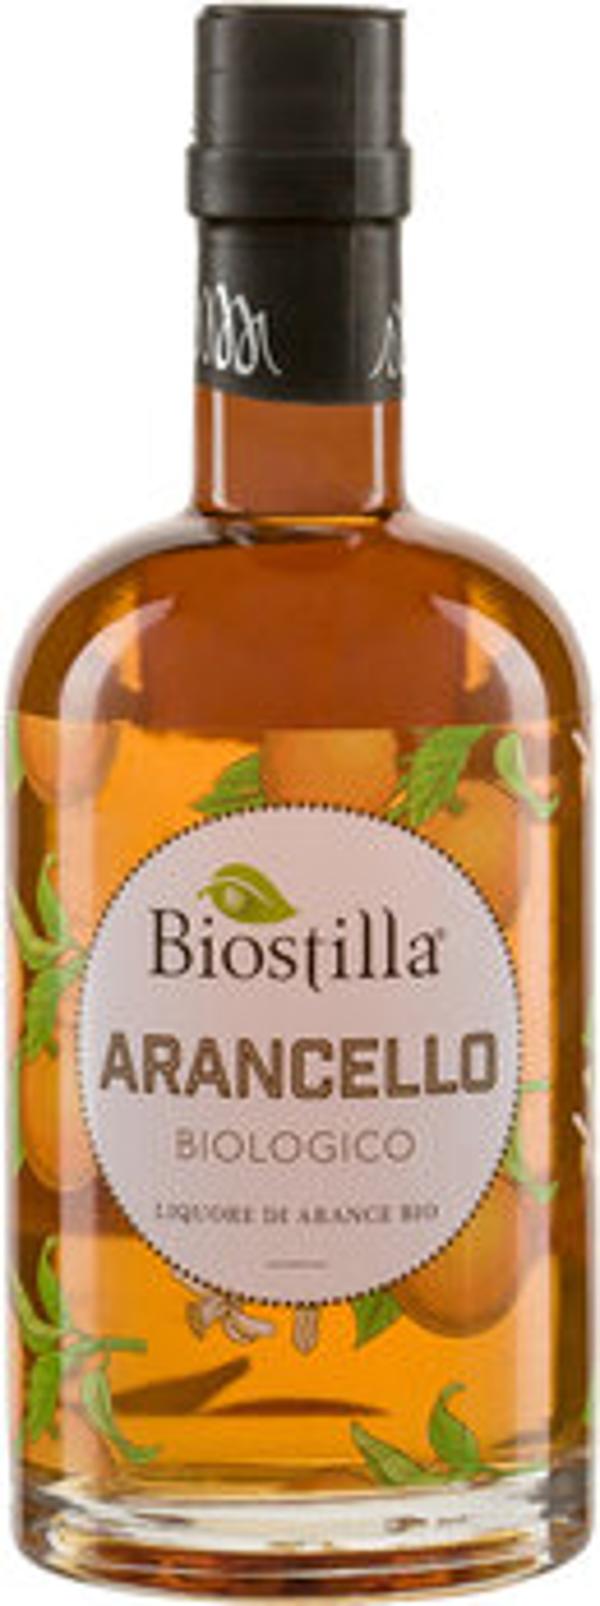 Produktfoto zu Biostilla Nocciola Haselnusslikör 50cl